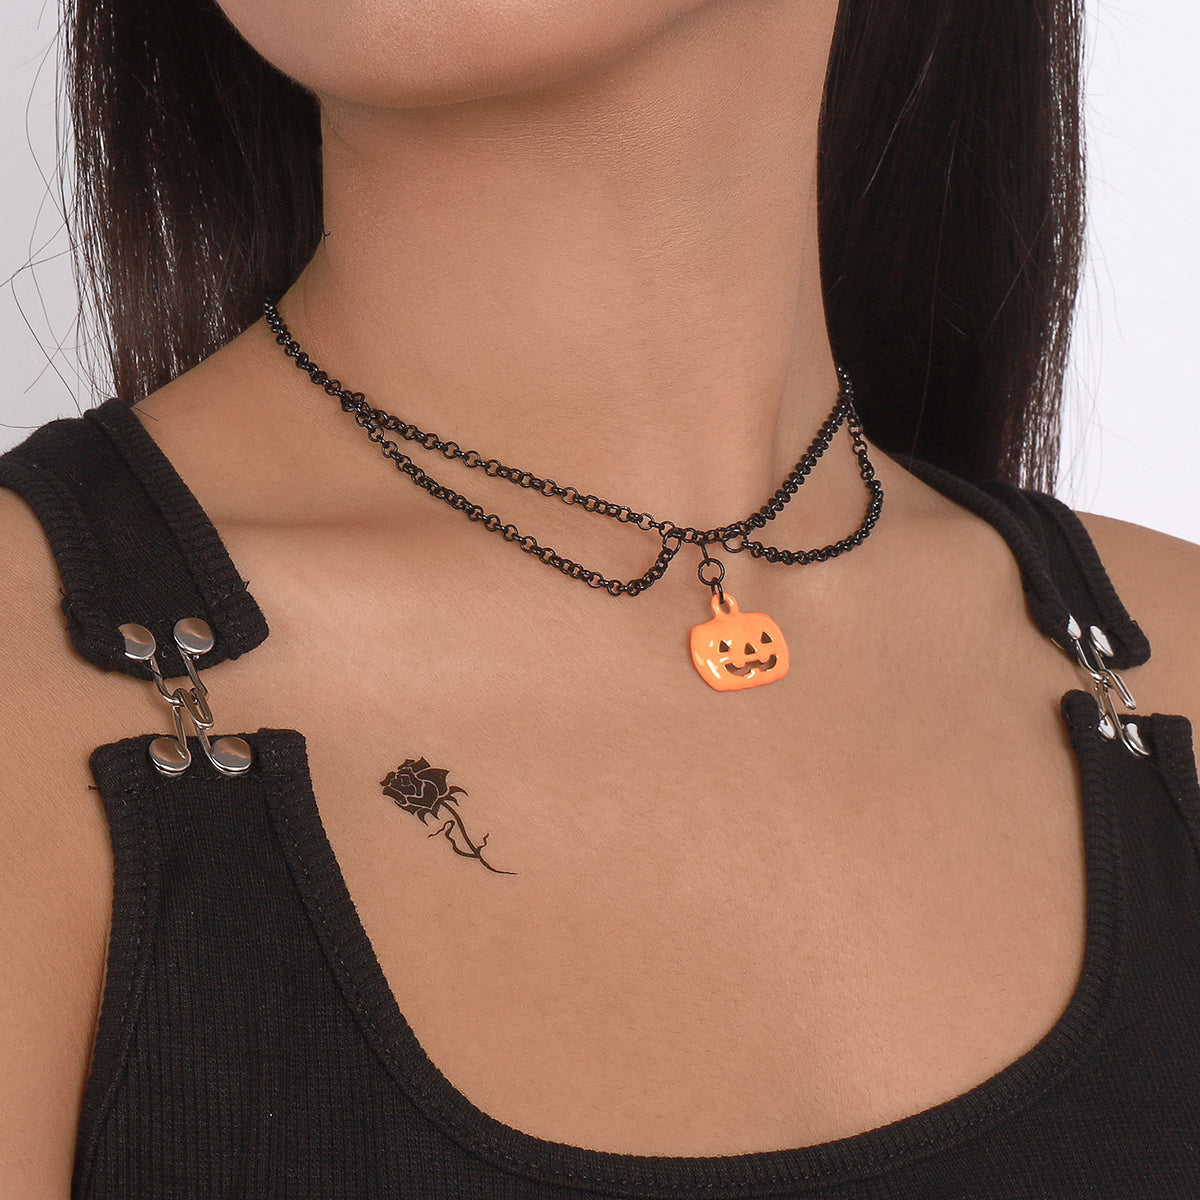 Halloween Nightmare Pumpkin Pendant Necklace medyjewelry